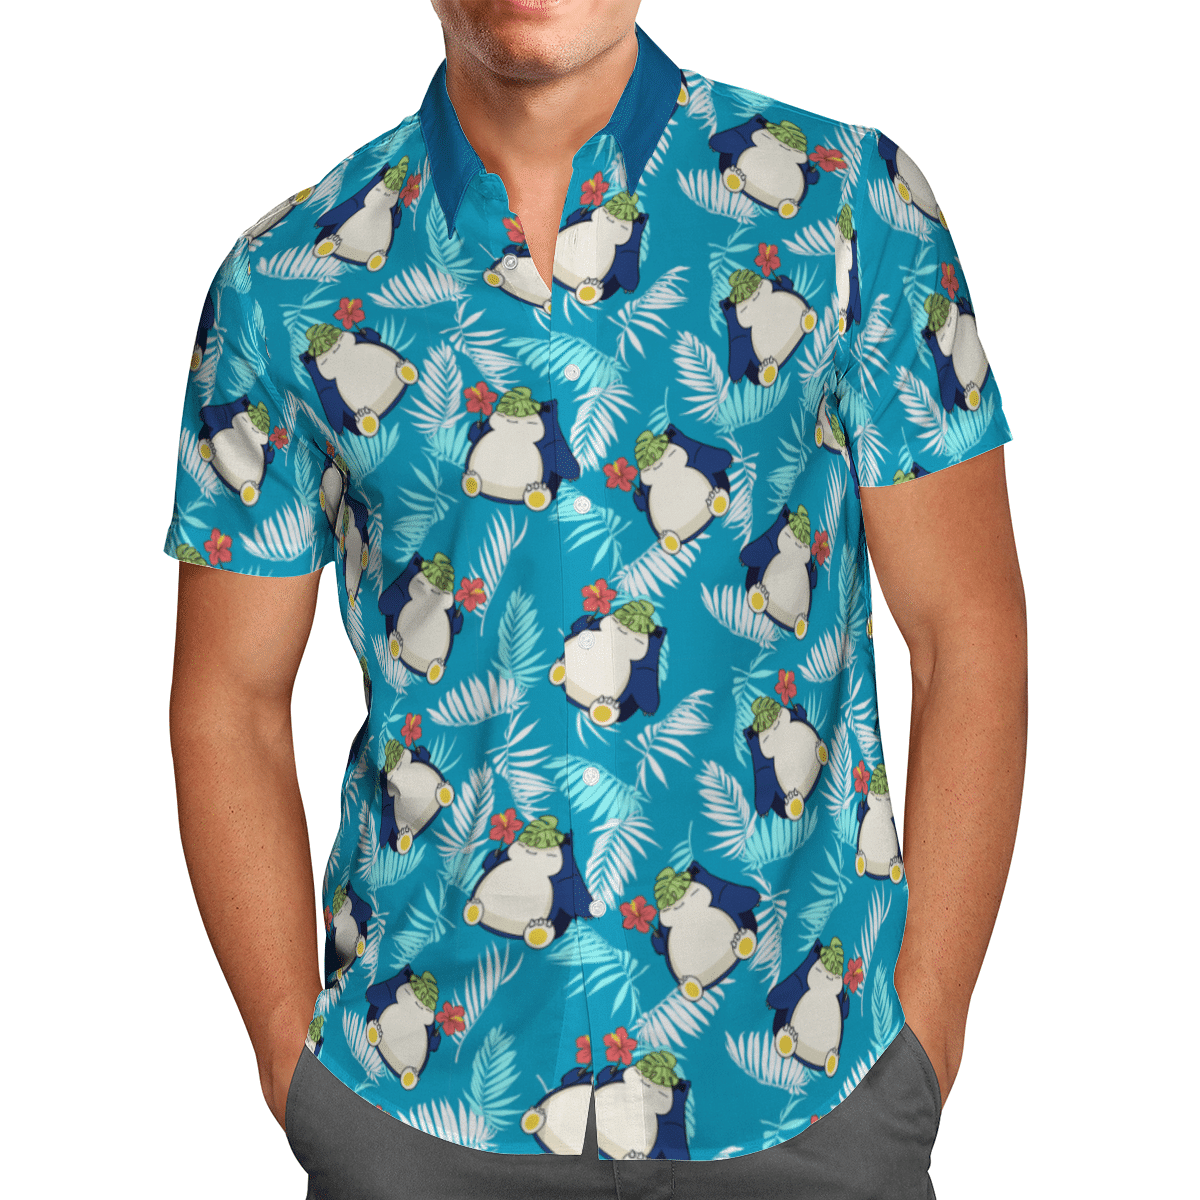 Snorlax hawaiian shirt and short – LIMITED EDITION